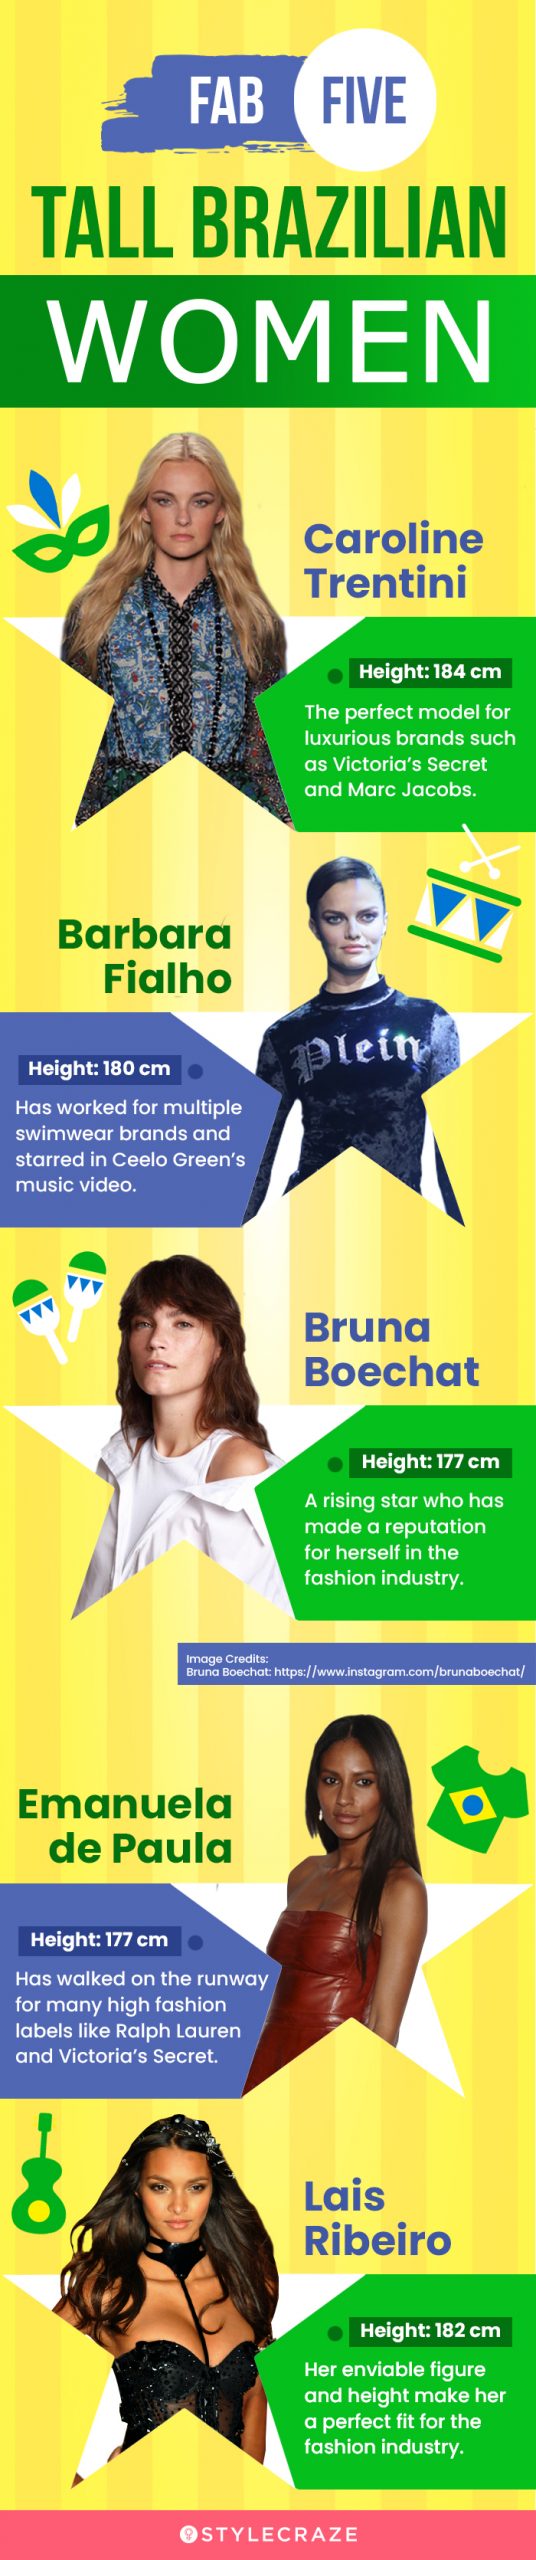 fab five tall brazilian women [infographic]